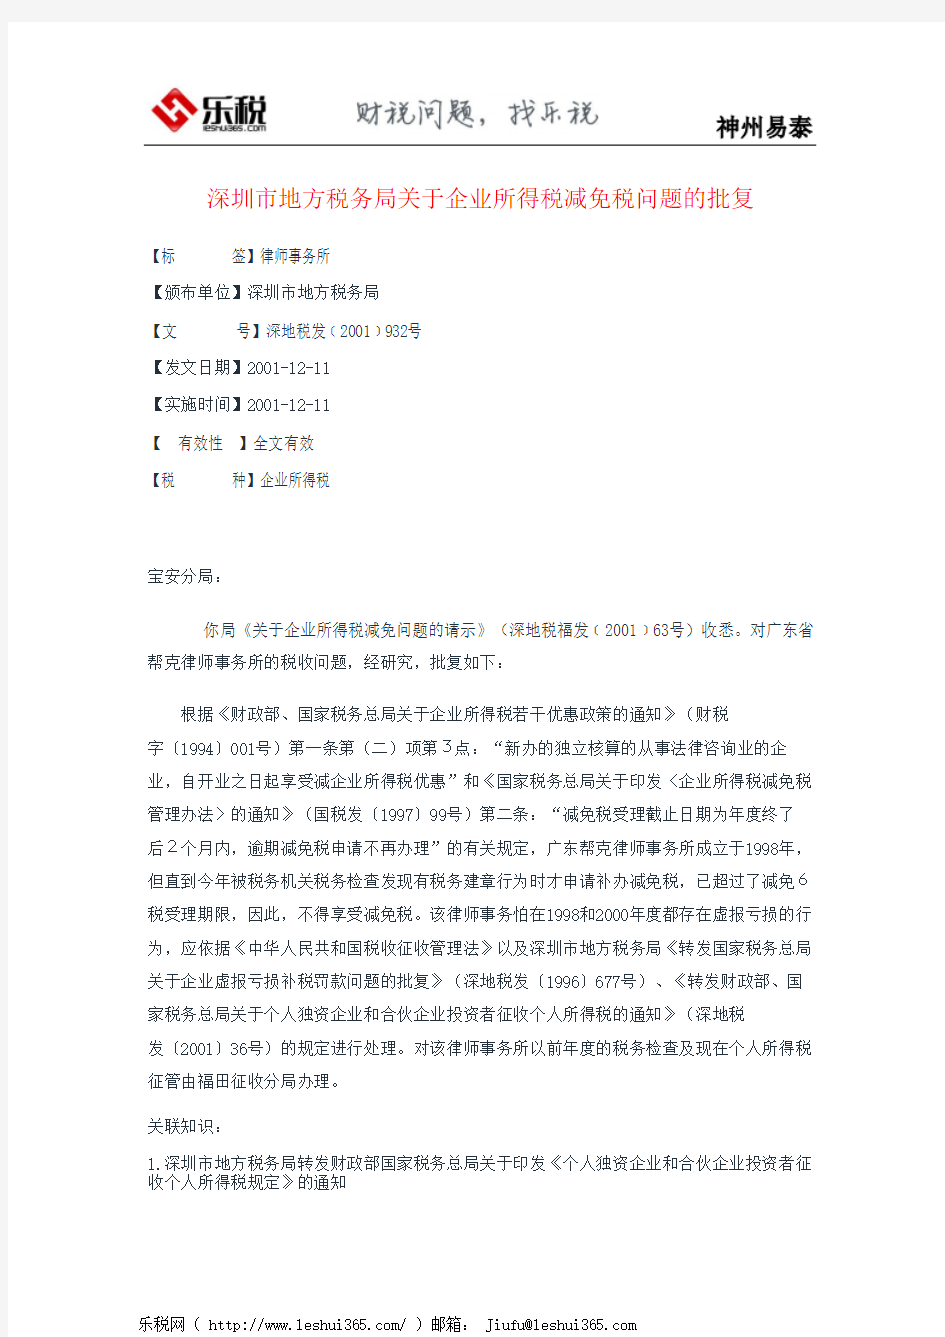 深圳市地方税务局关于企业所得税减免税问题的批复